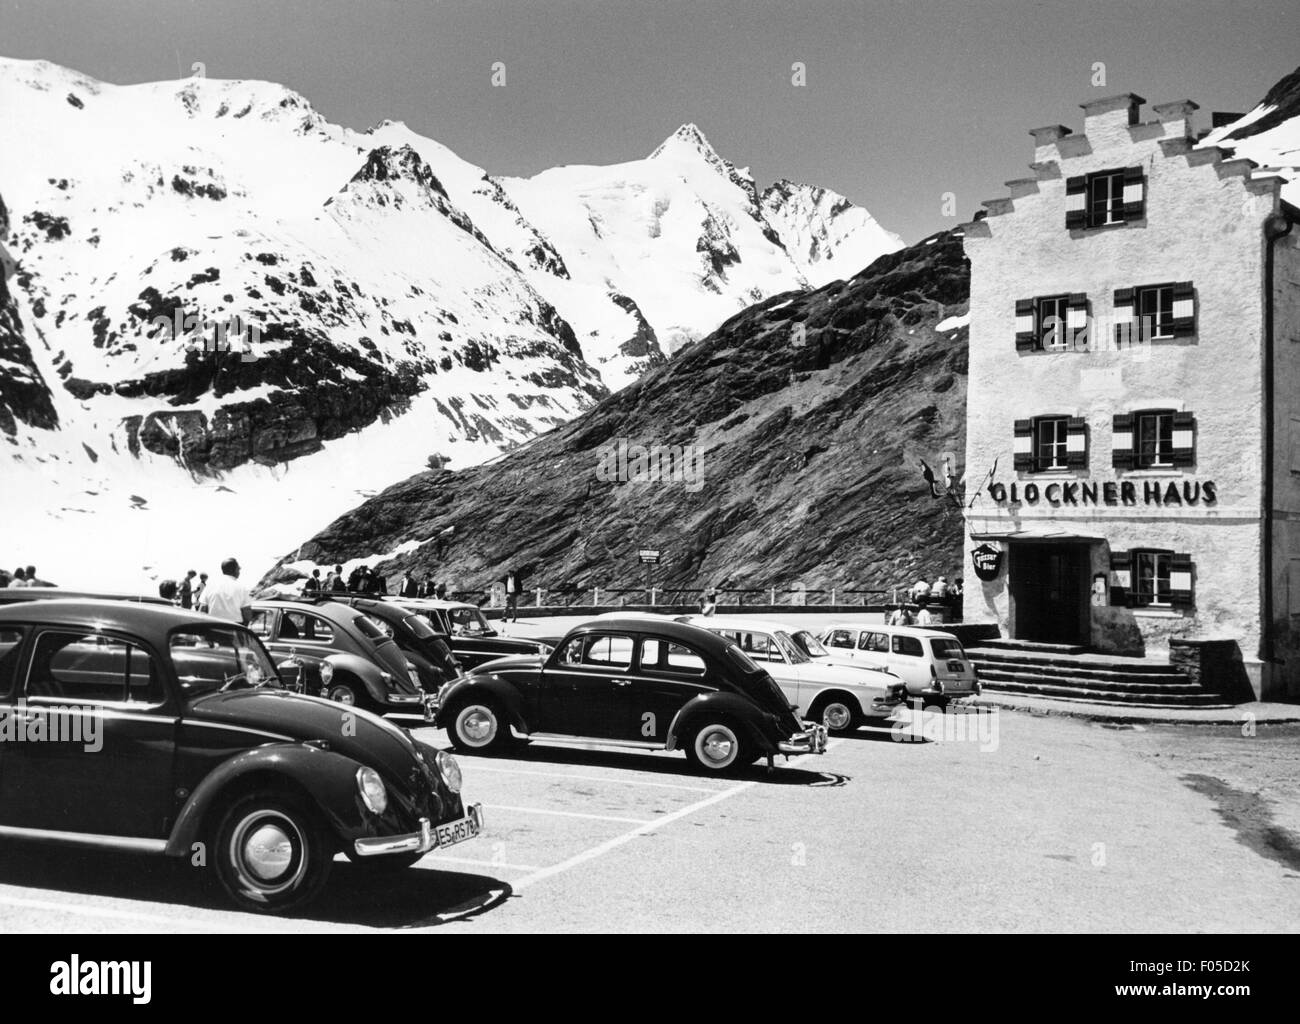 Geografia / viaggio, Austria, Carinzia, paesaggi, vista al Grossglockner dal parcheggio Glocknerhaus, anni 60, diritti aggiuntivi-clearences-non disponibile Foto Stock